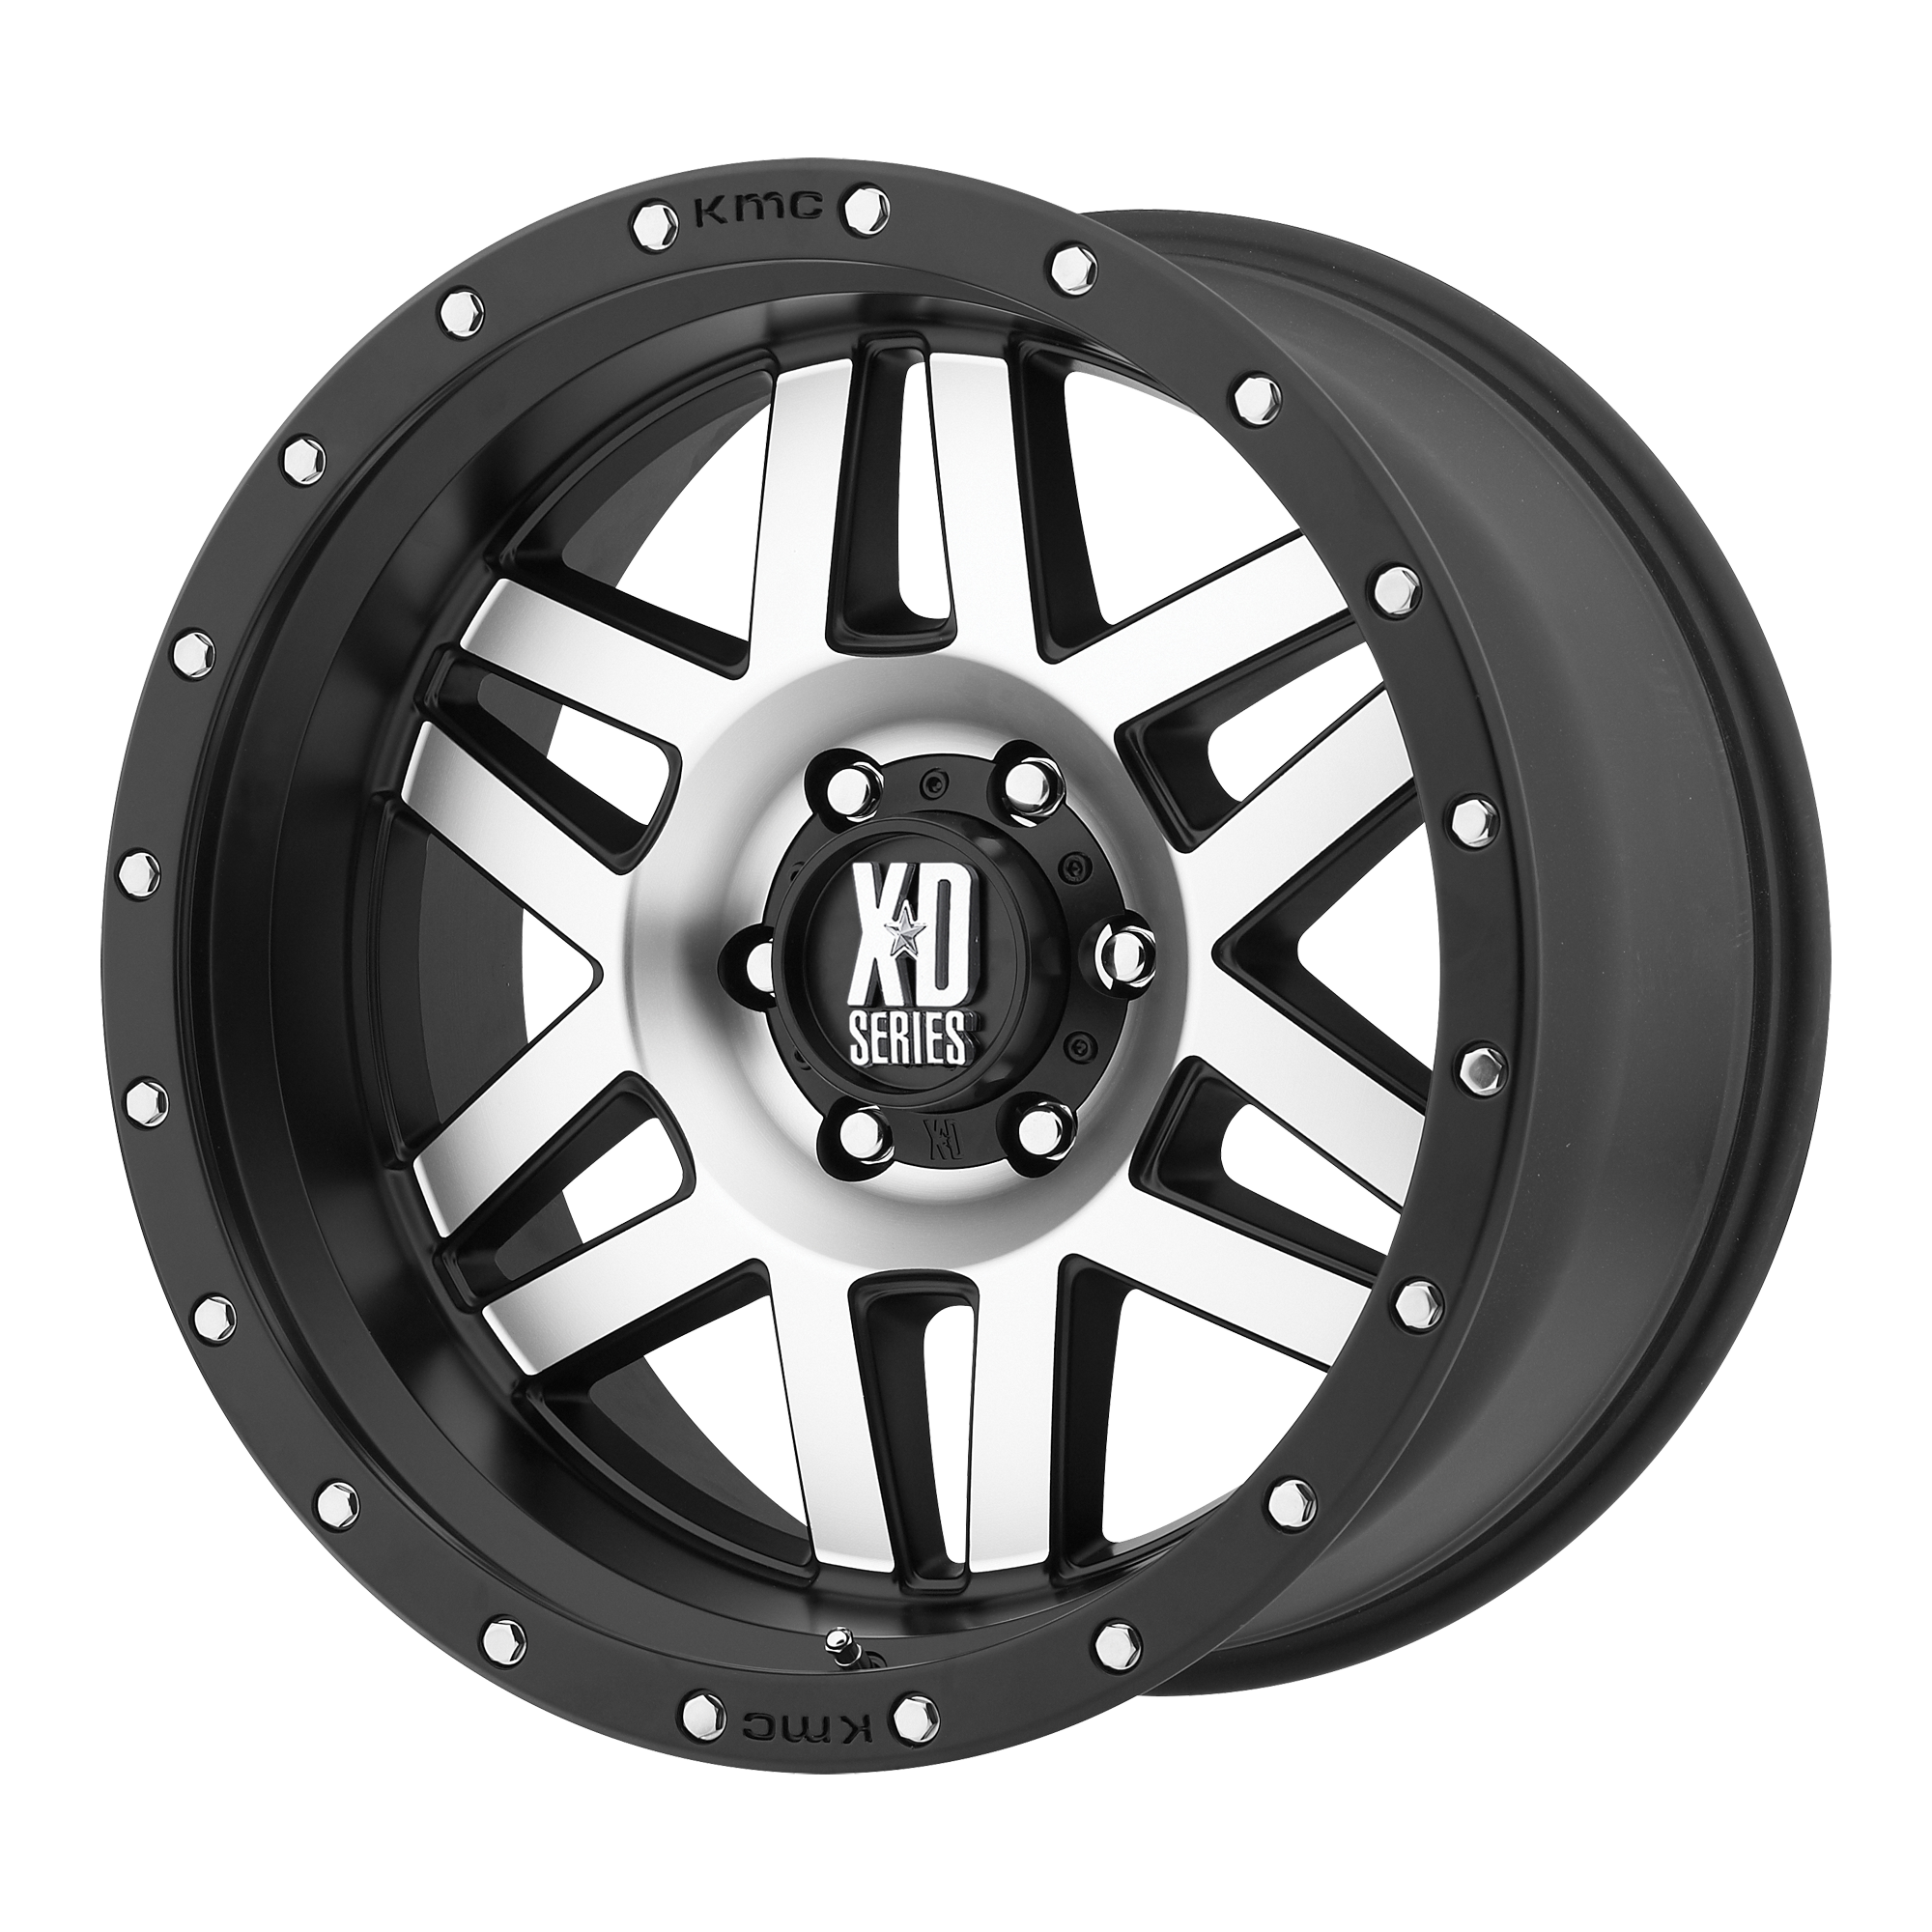 Xd колеса. Диски KMC XD Series. KMC XD Wheels. Колесный диск XD Series xd301 9x17/5x139.7 d108 et18 Satin Black. Колесный диск XD Series xd822 Monster II 9x17/5x127/135 d87.1 et-12 Matt Black.